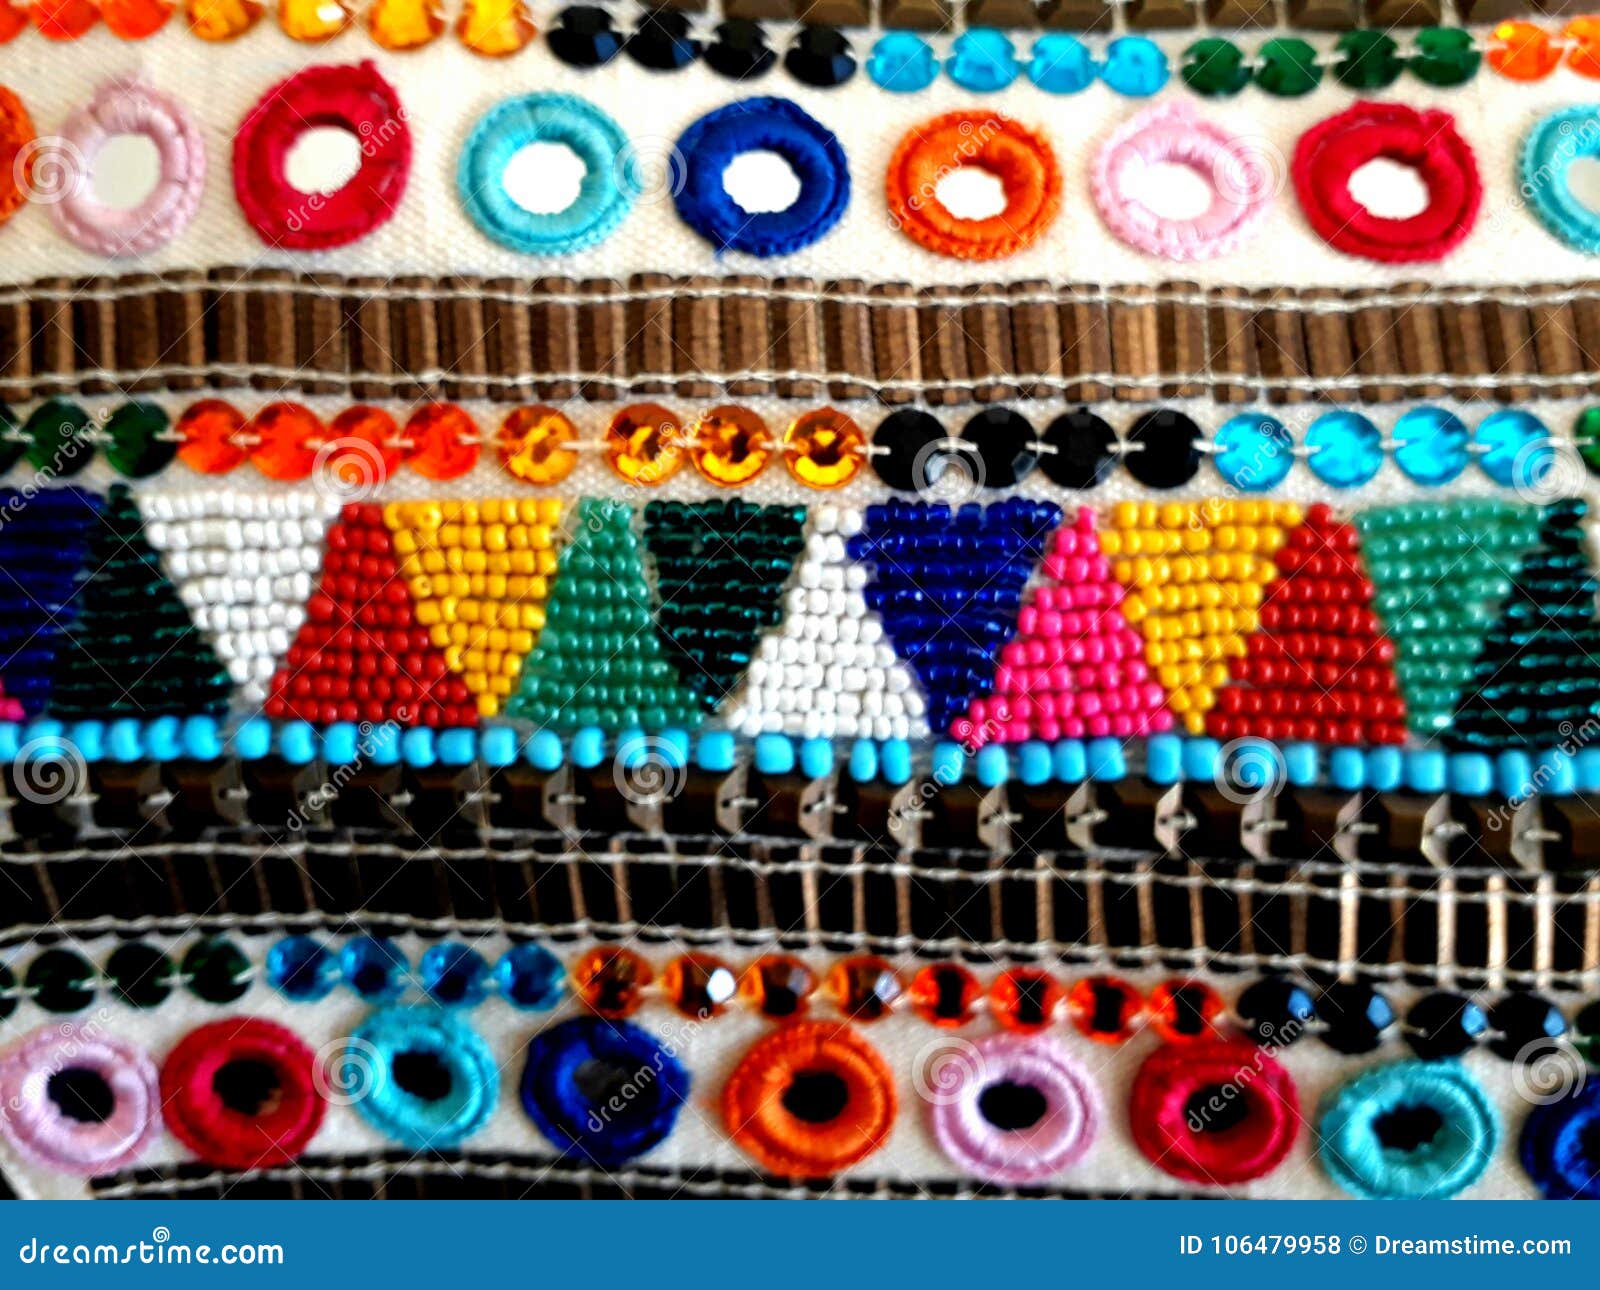 tejido de colores artesanal / handmade colored fabric